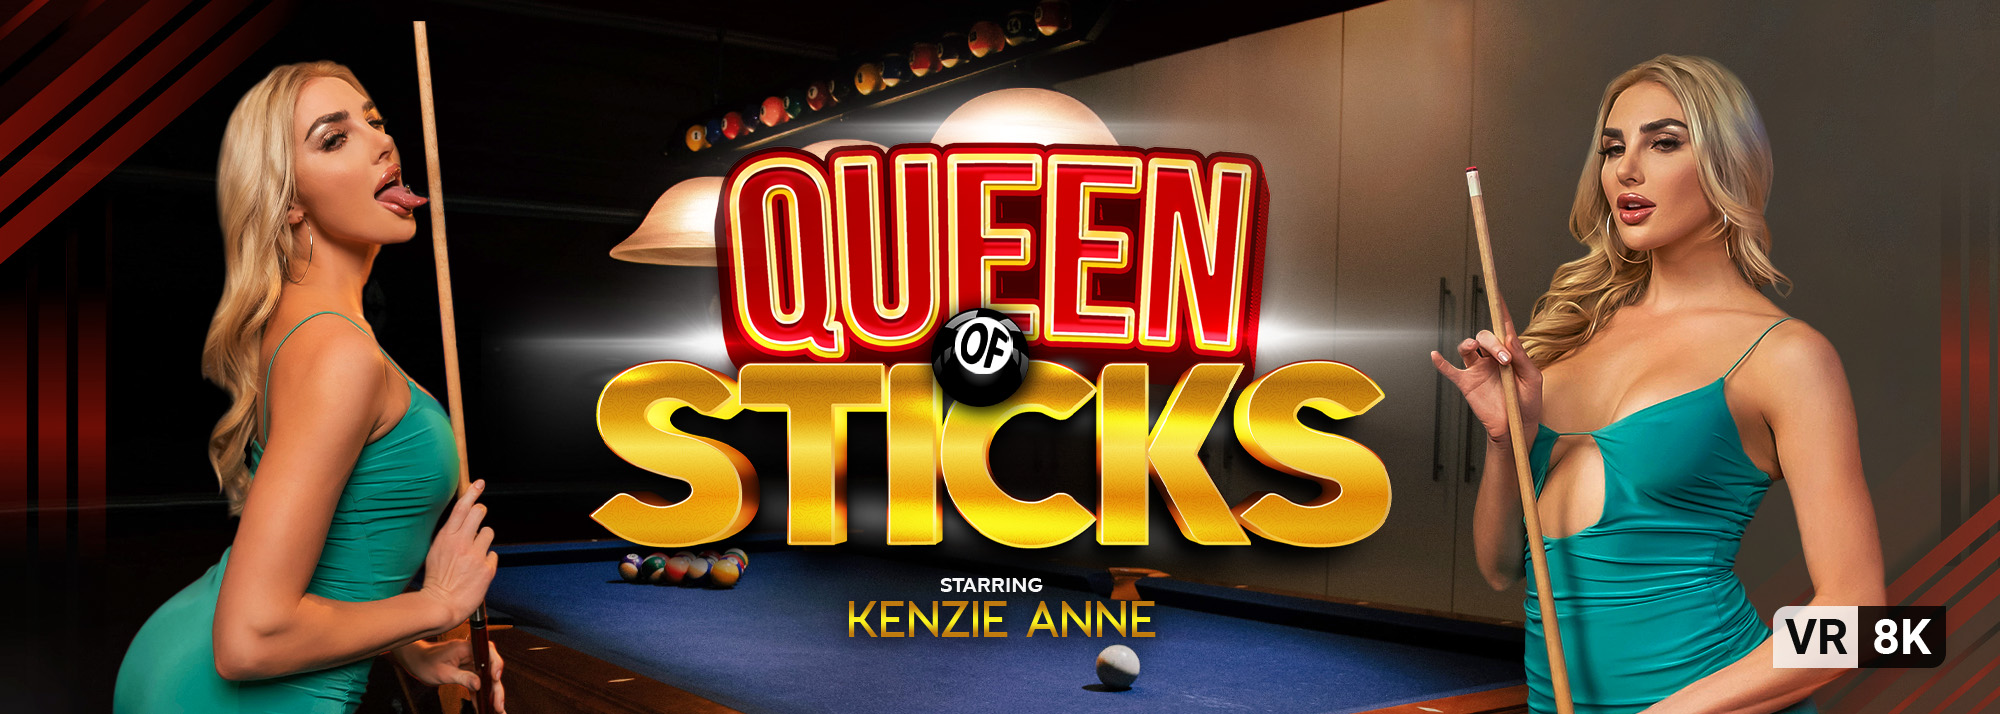 Queen of Sticks - VR Porn Video, Starring: Kenzie Anne